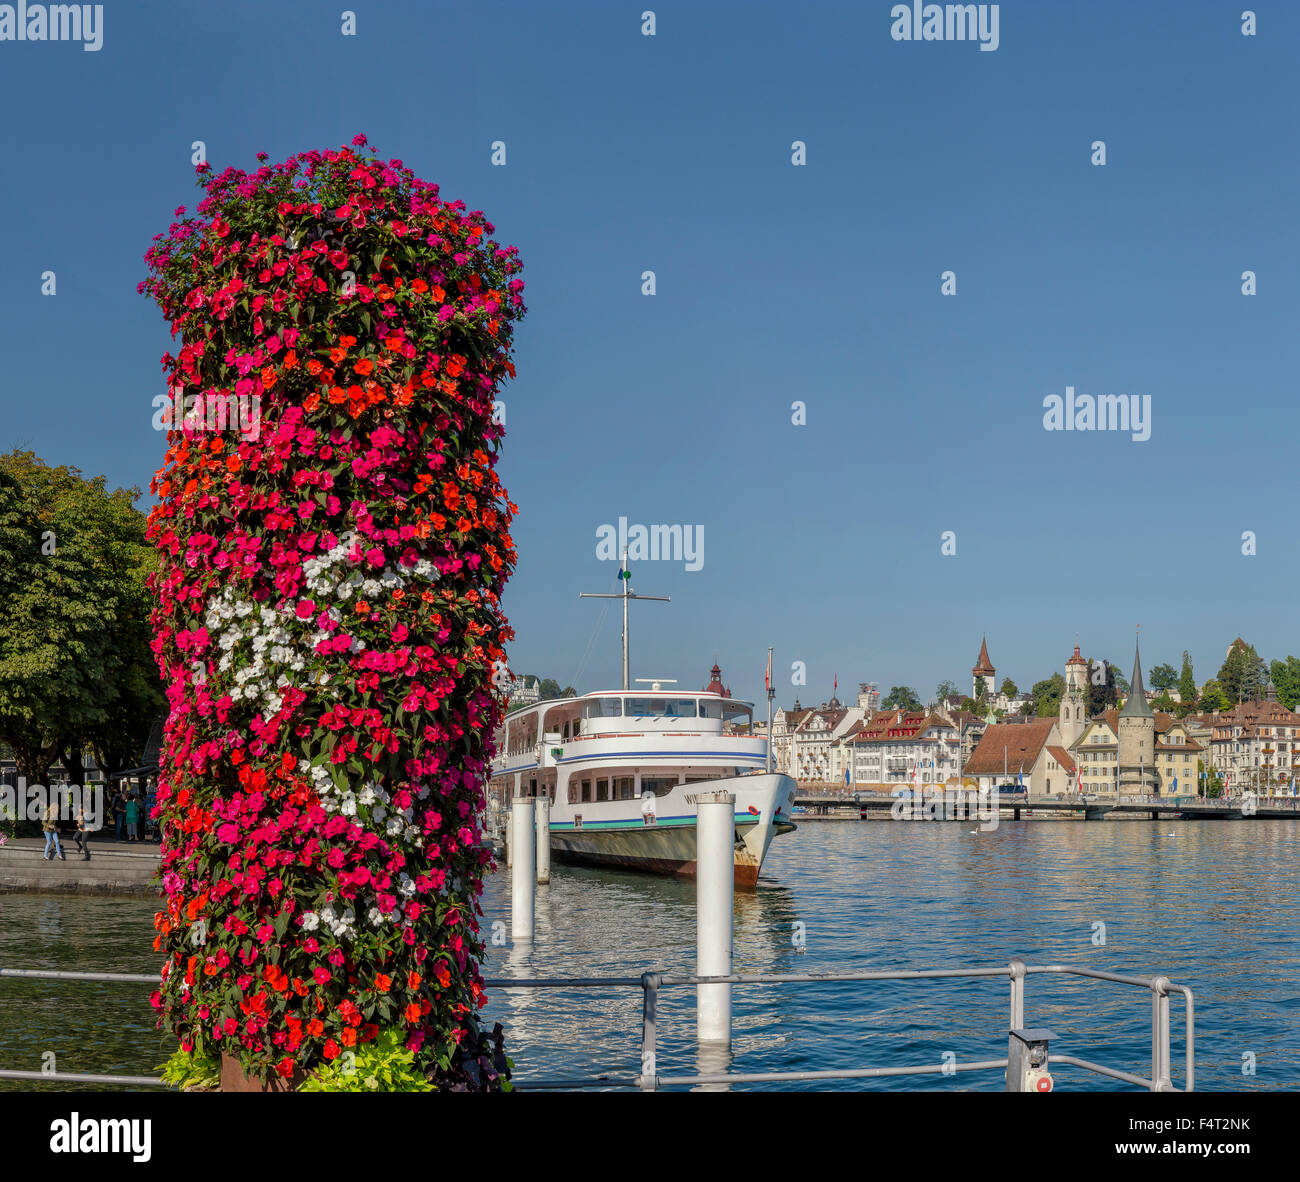 Switzerland, Europe, Luzern, Lucerne, Round-trip, boat, Vierwaldstättersee Schifffahrtgesellschaft, city, water, flowers, summer Stock Photo